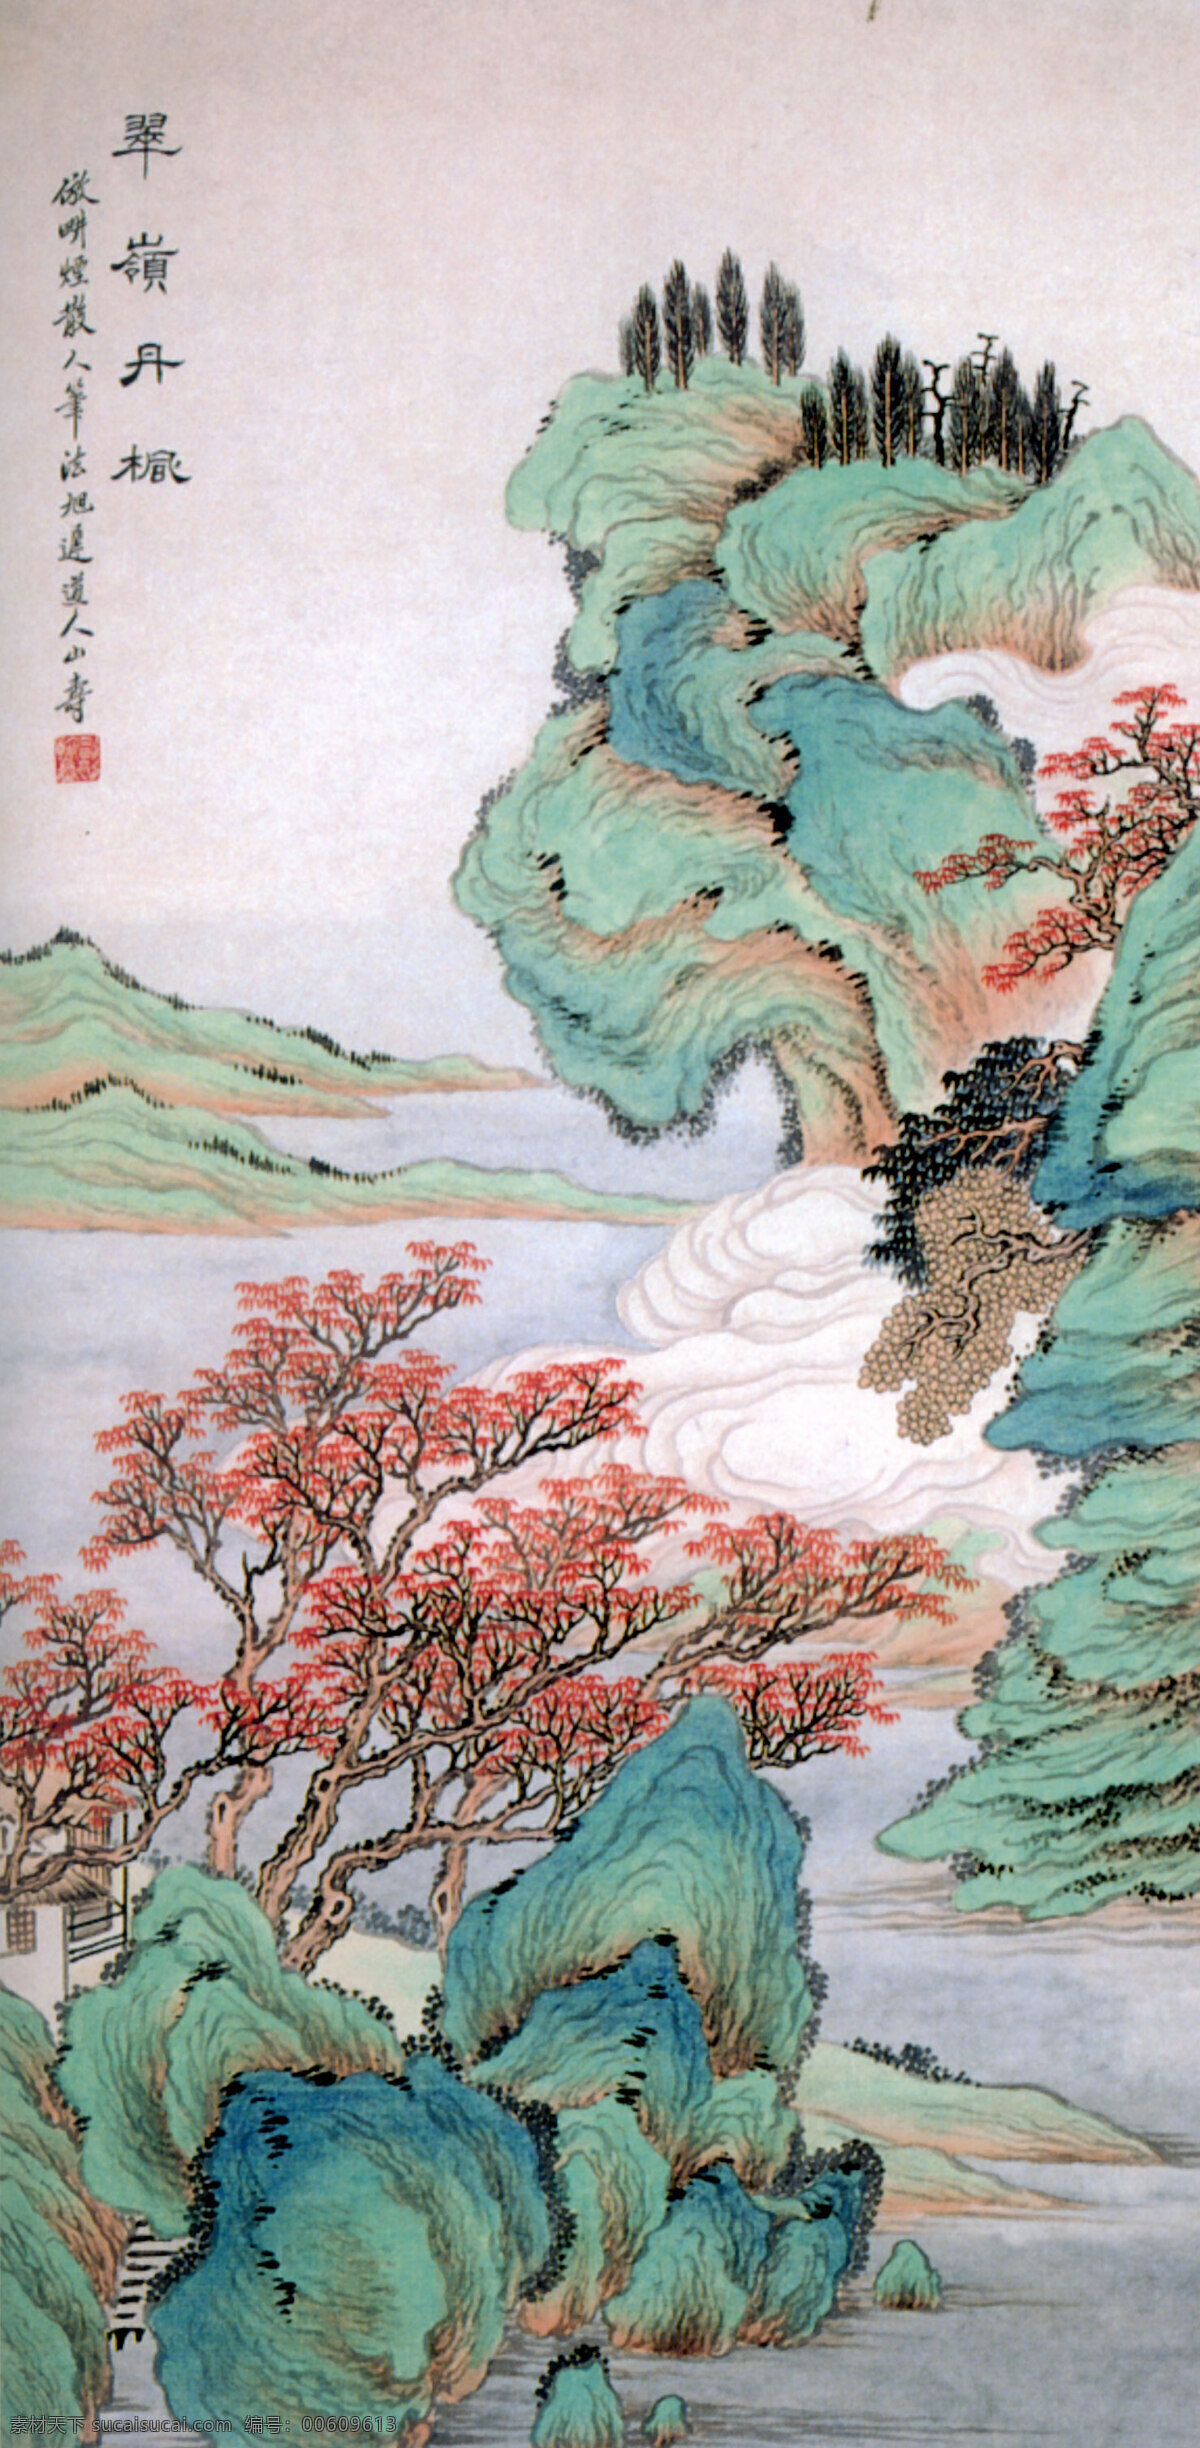 中国传世名画 古画 古图 名画 文化艺术 传统文化 设计图库